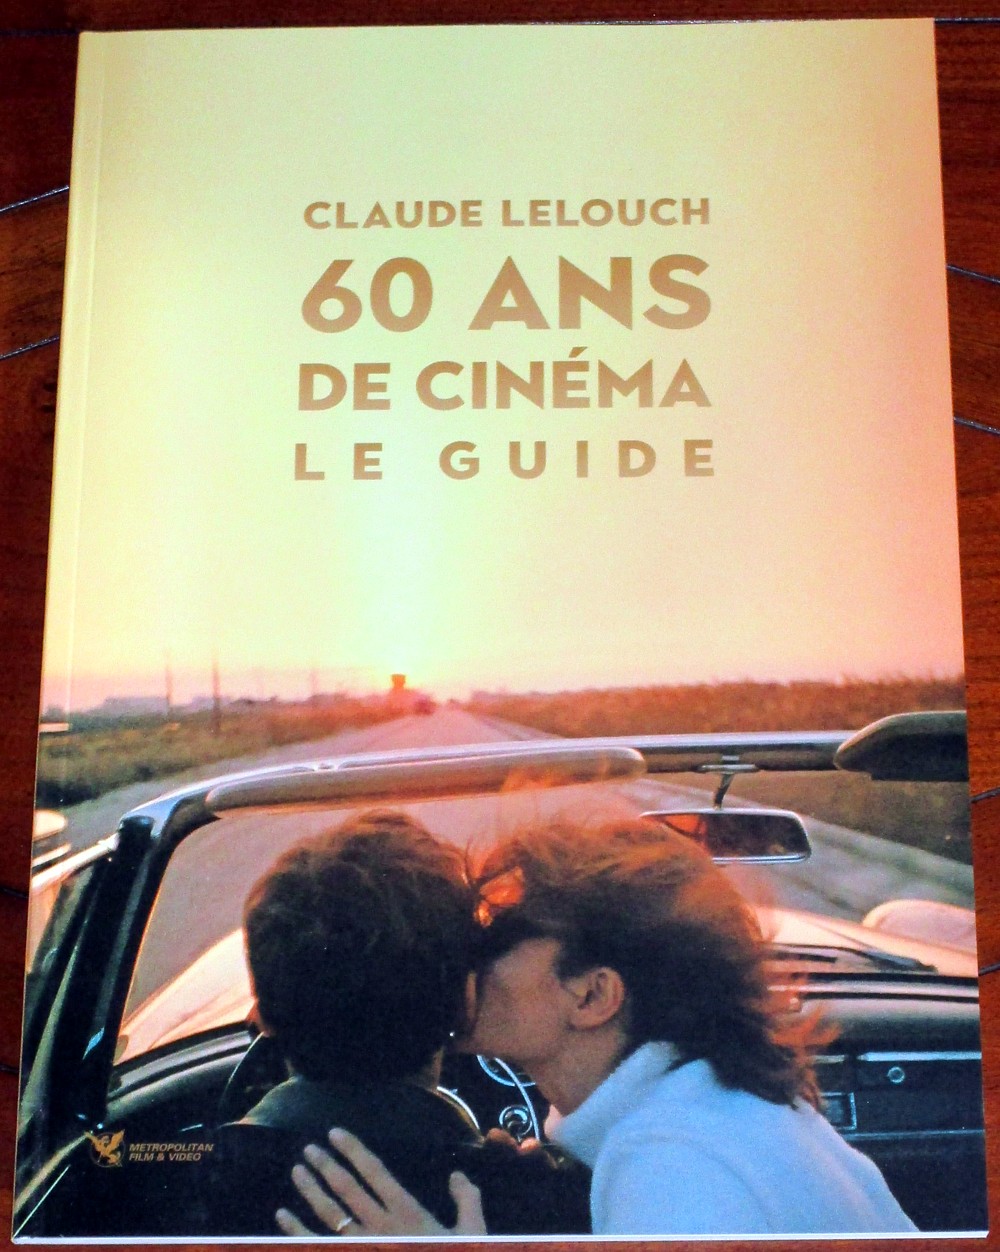 CLAUDE LELOUCH: 60 ANS DE CINEMA 041-cl11